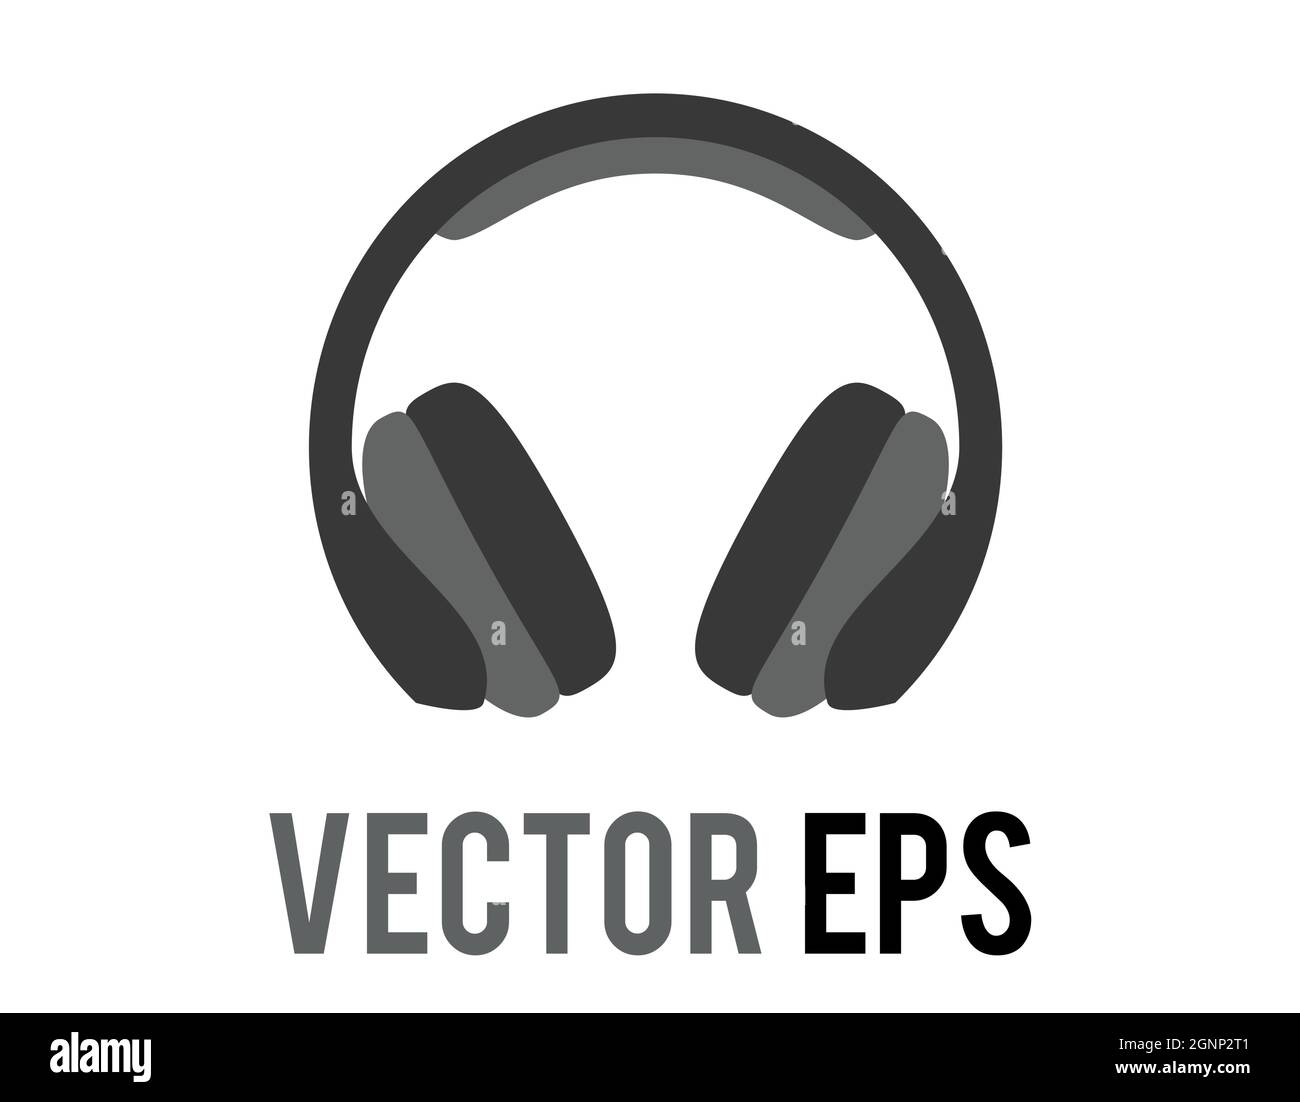 L'icône de casque noir vectoriel isolé, utilisée pour écouter de la musique ou d'autres sons Illustration de Vecteur